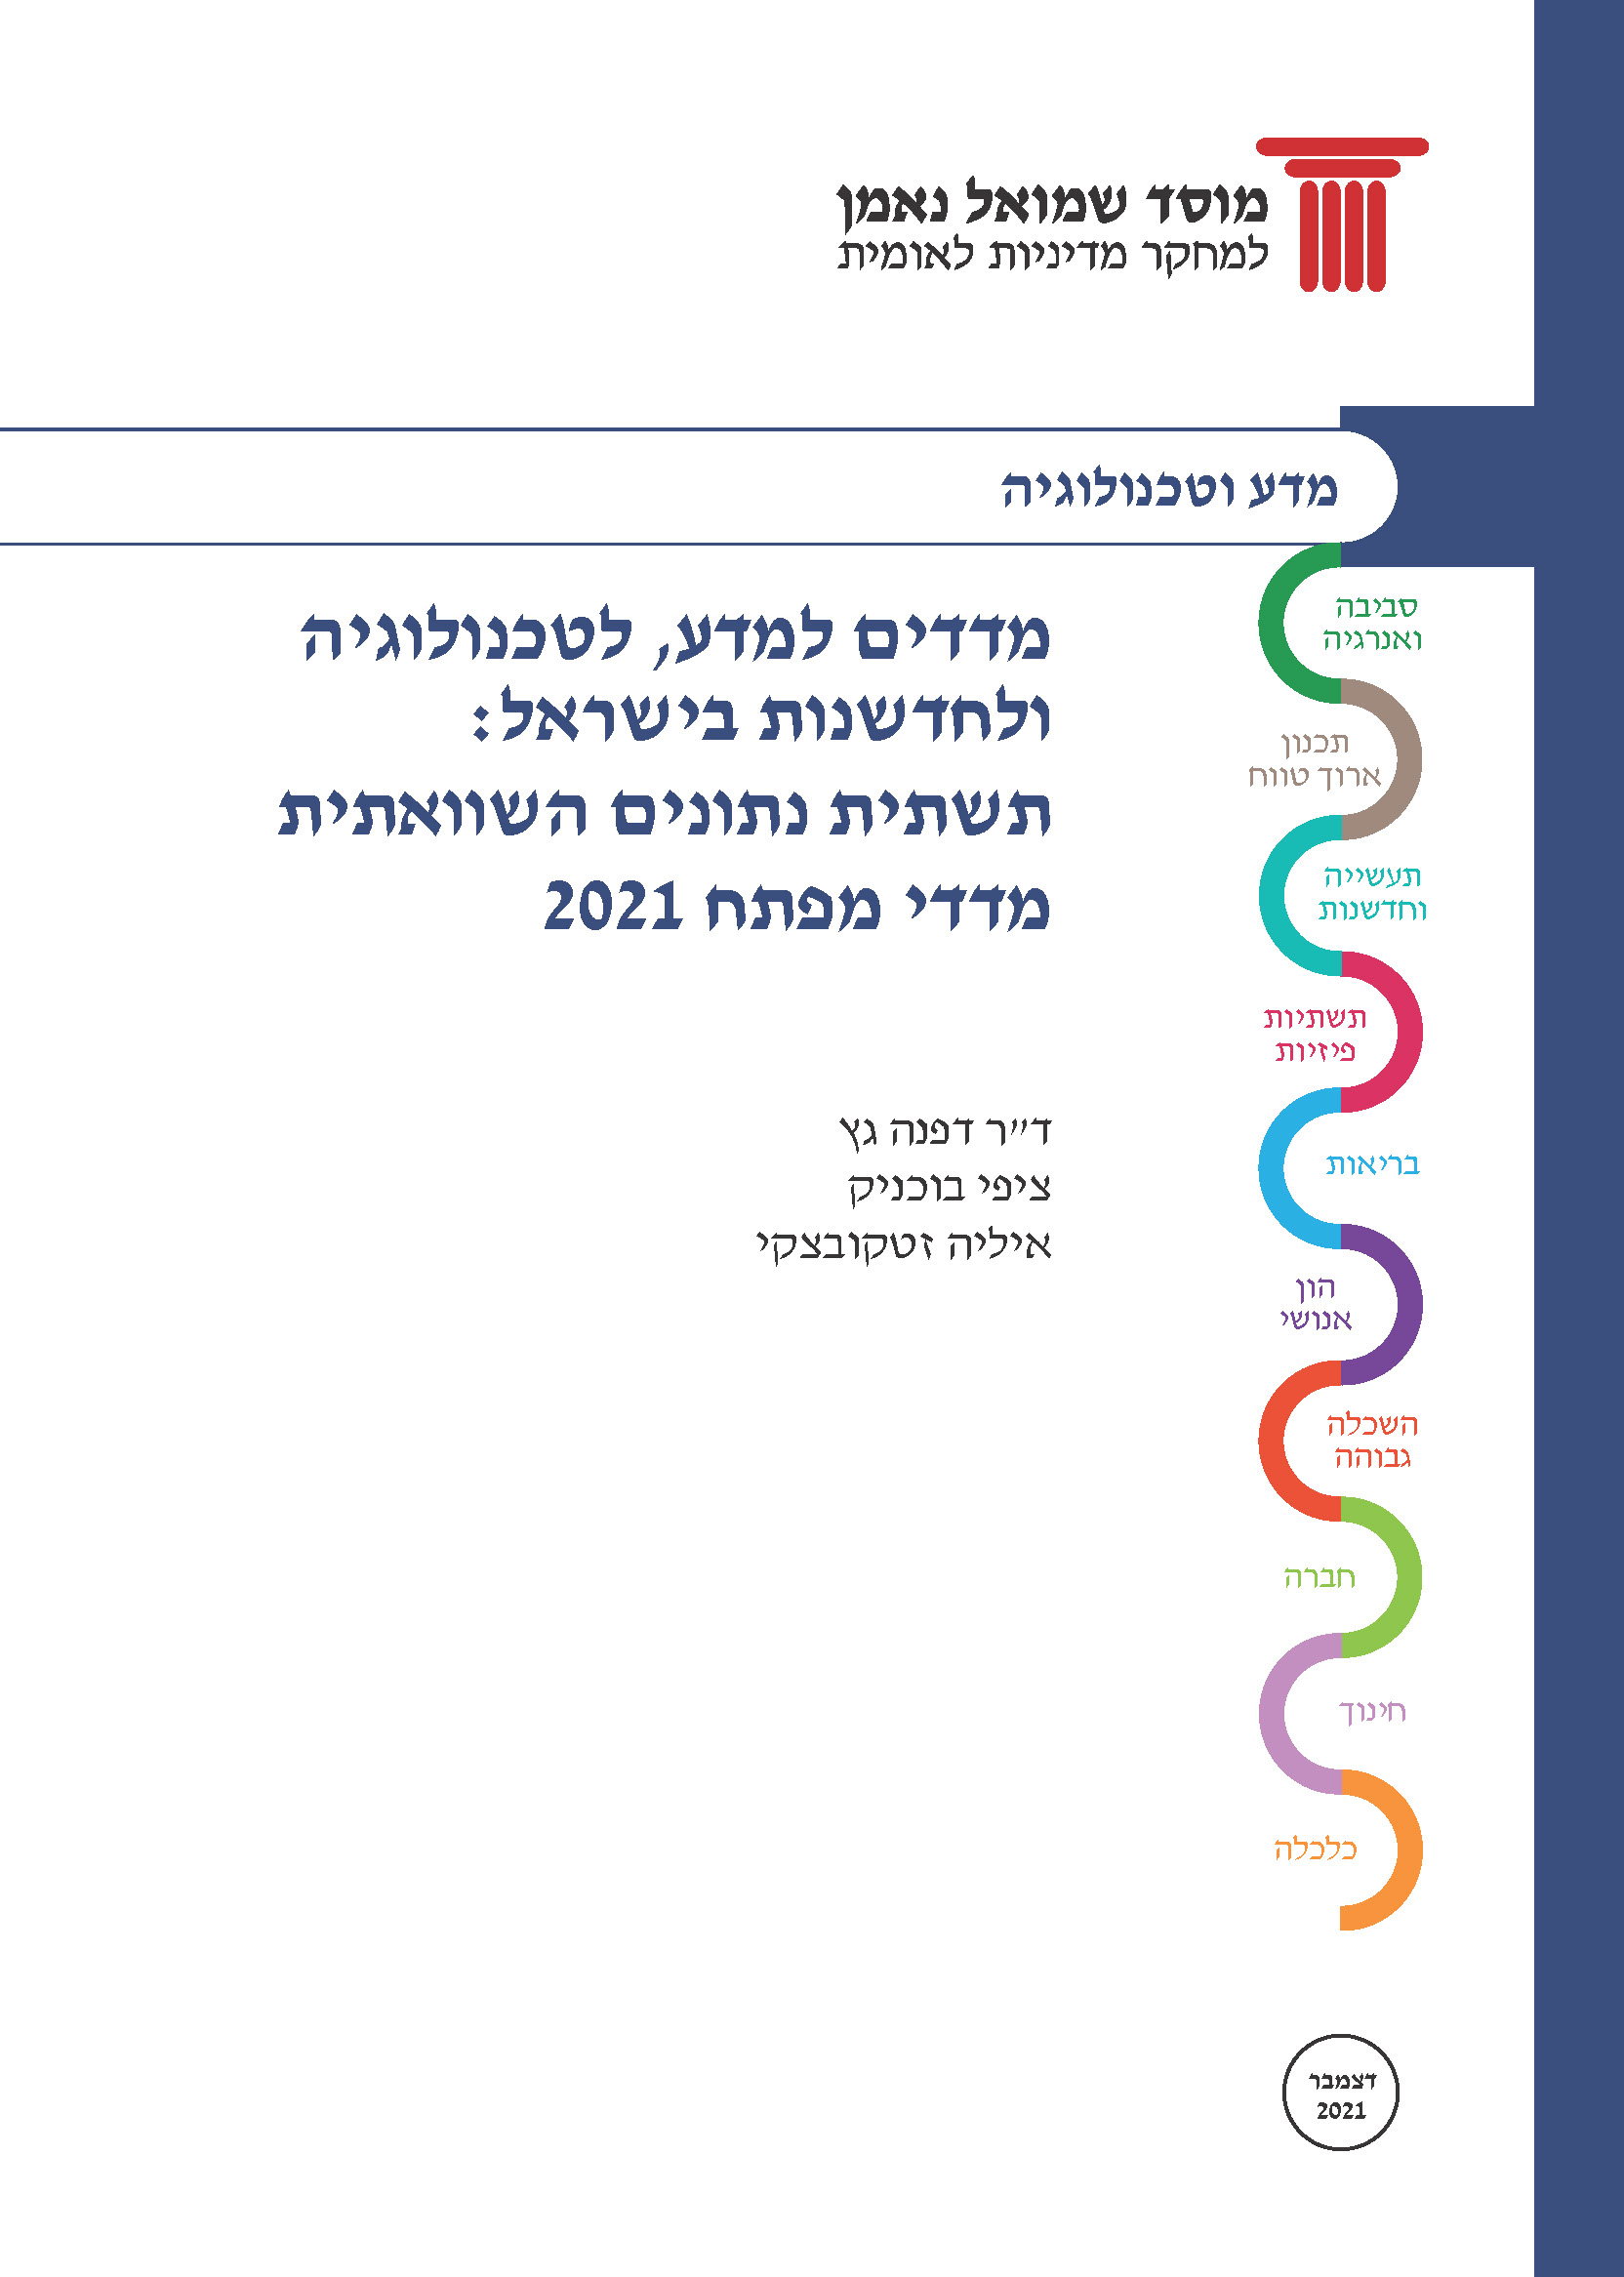 מדדים למדע, לטכנולוגיה ולחדשנות בישראל: תשתית נתונים השוואתית 2021 – חלק א